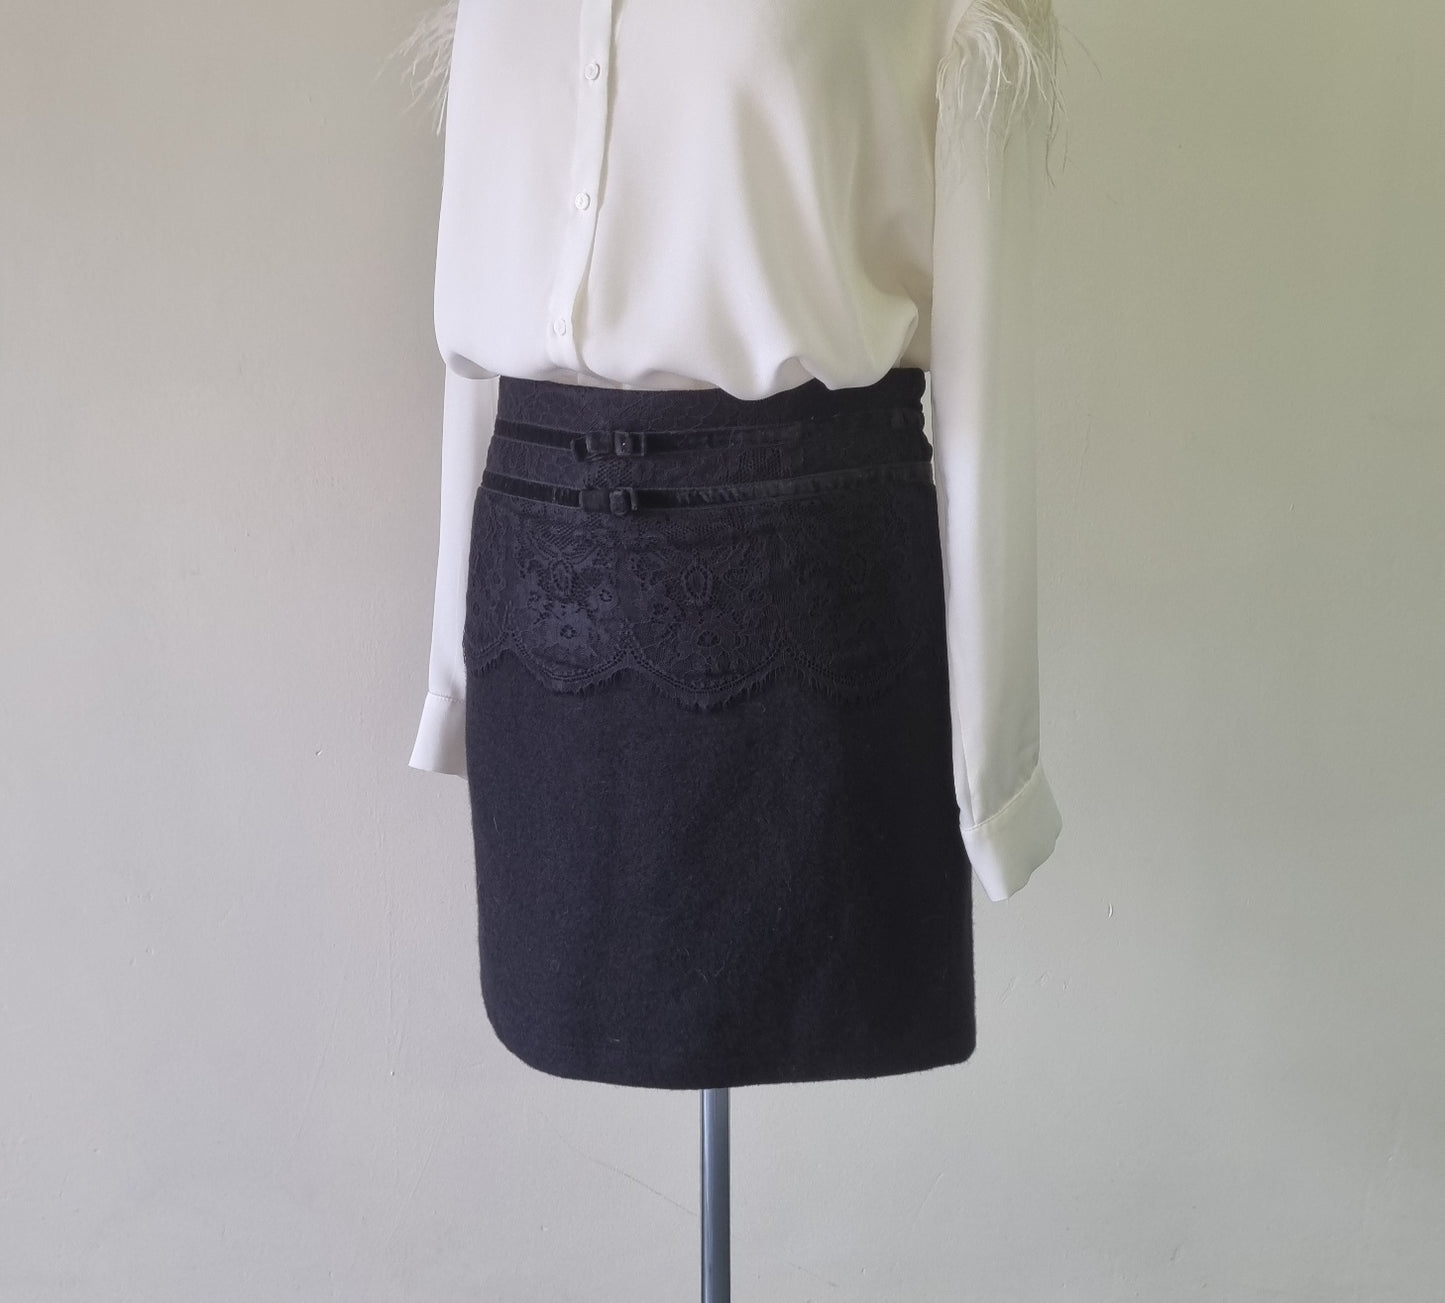 Jo Borkett - Black lined mini skirt with velvet bow trimmings